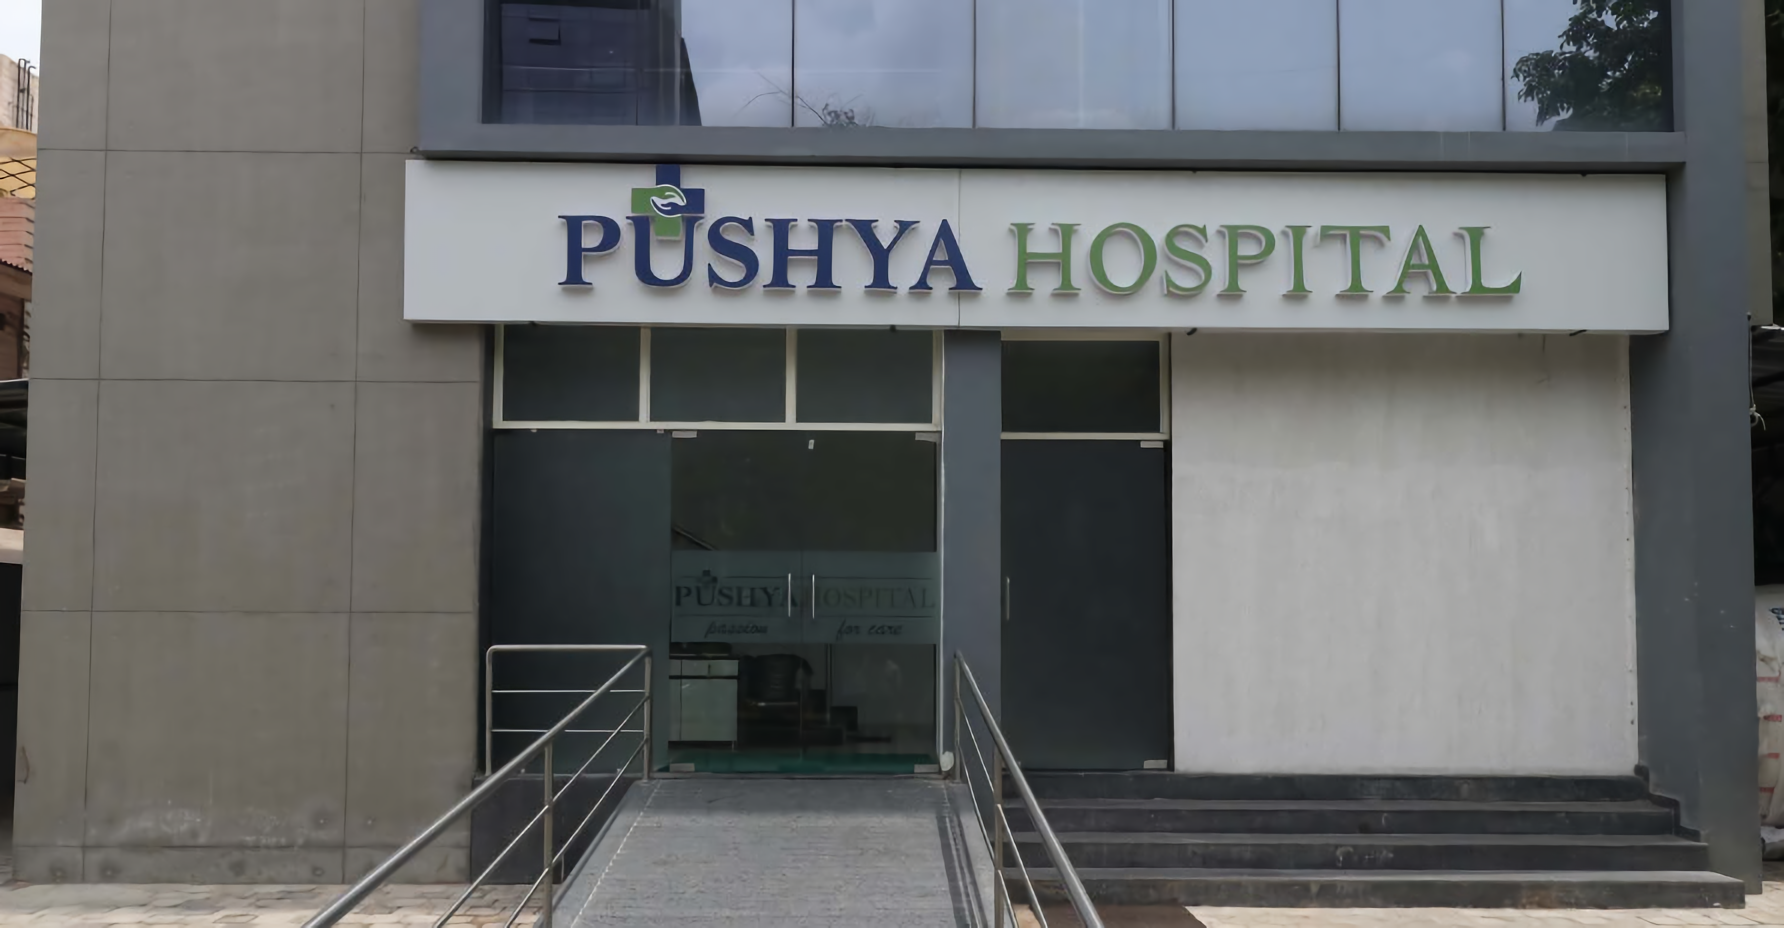 Pushya Hospital